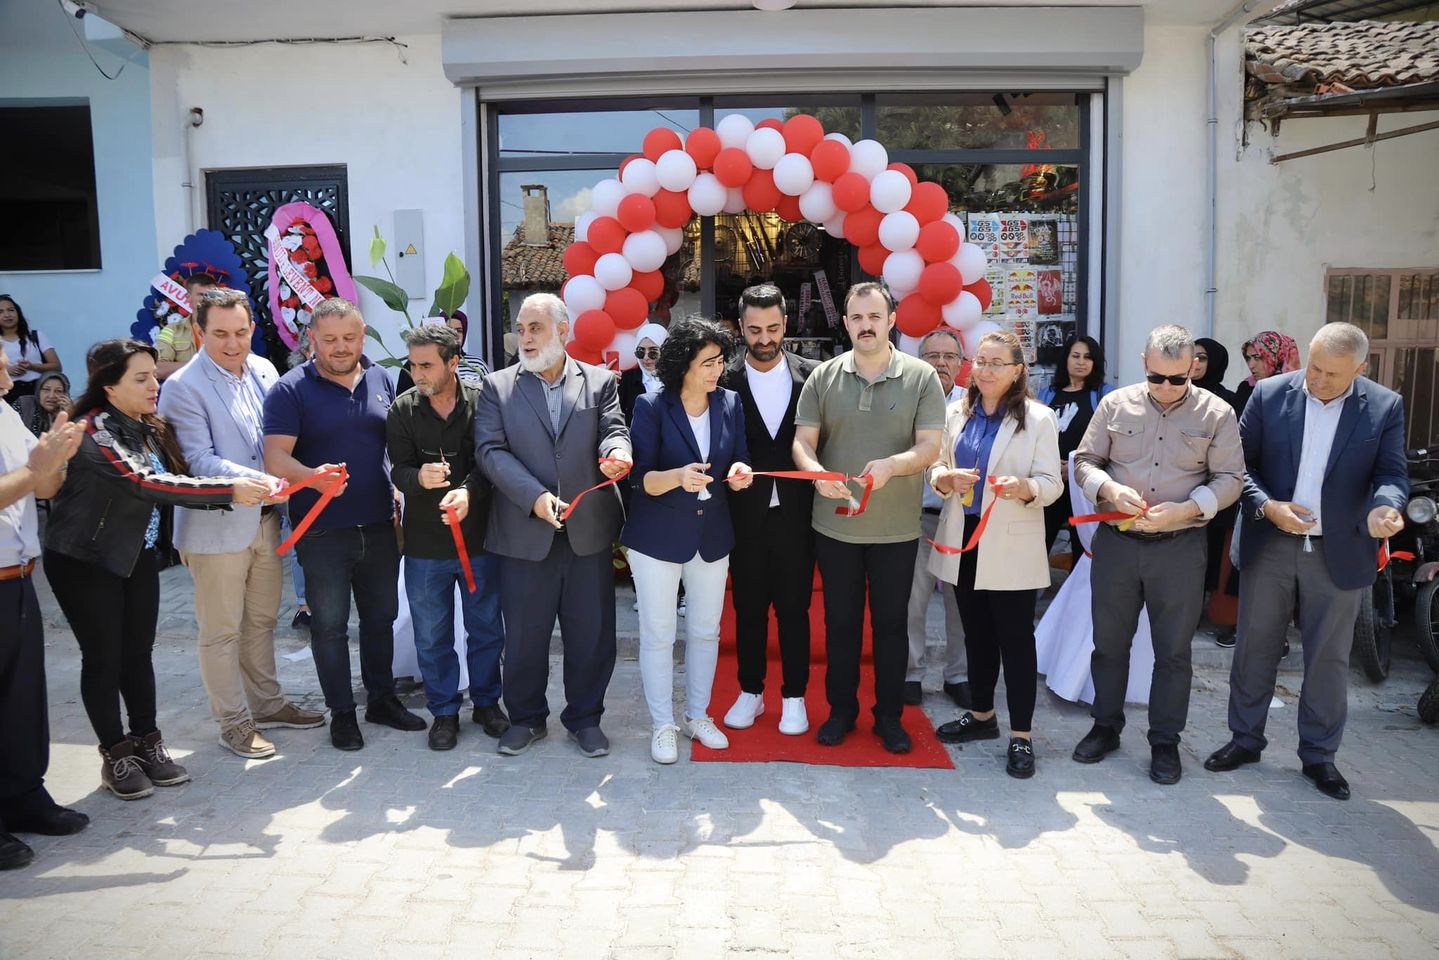 Yeni Yedek Parça Dükkanı Açılışı Yerel Ekonomiyi Canlandıracak